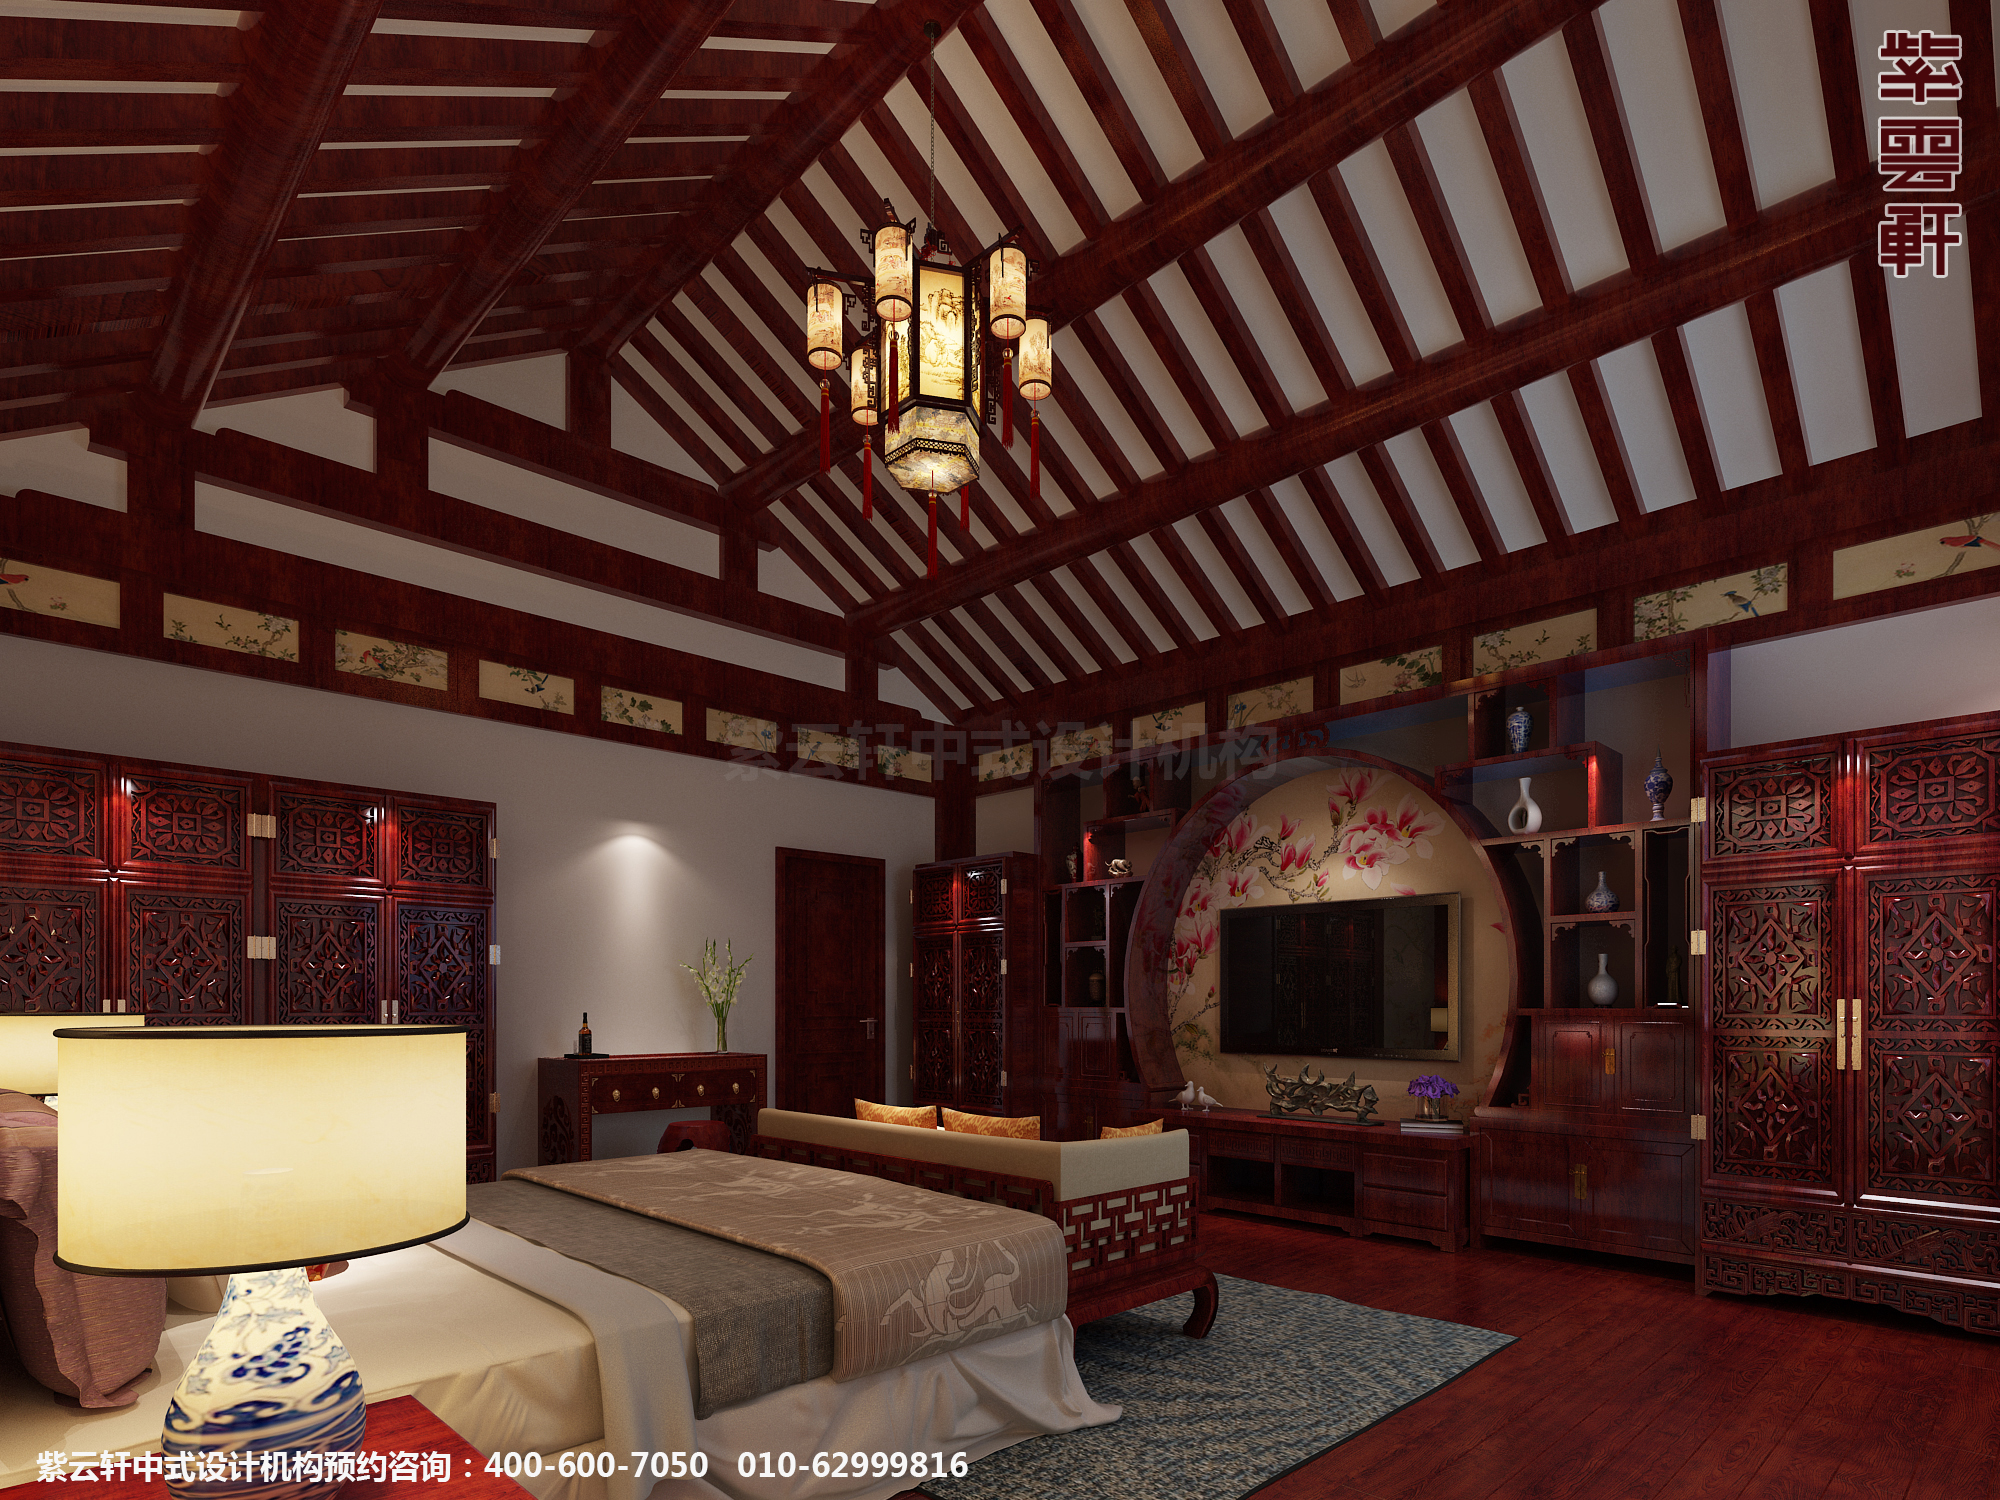 邢台别墅古典中式设计案例,卧室中式装修效果图